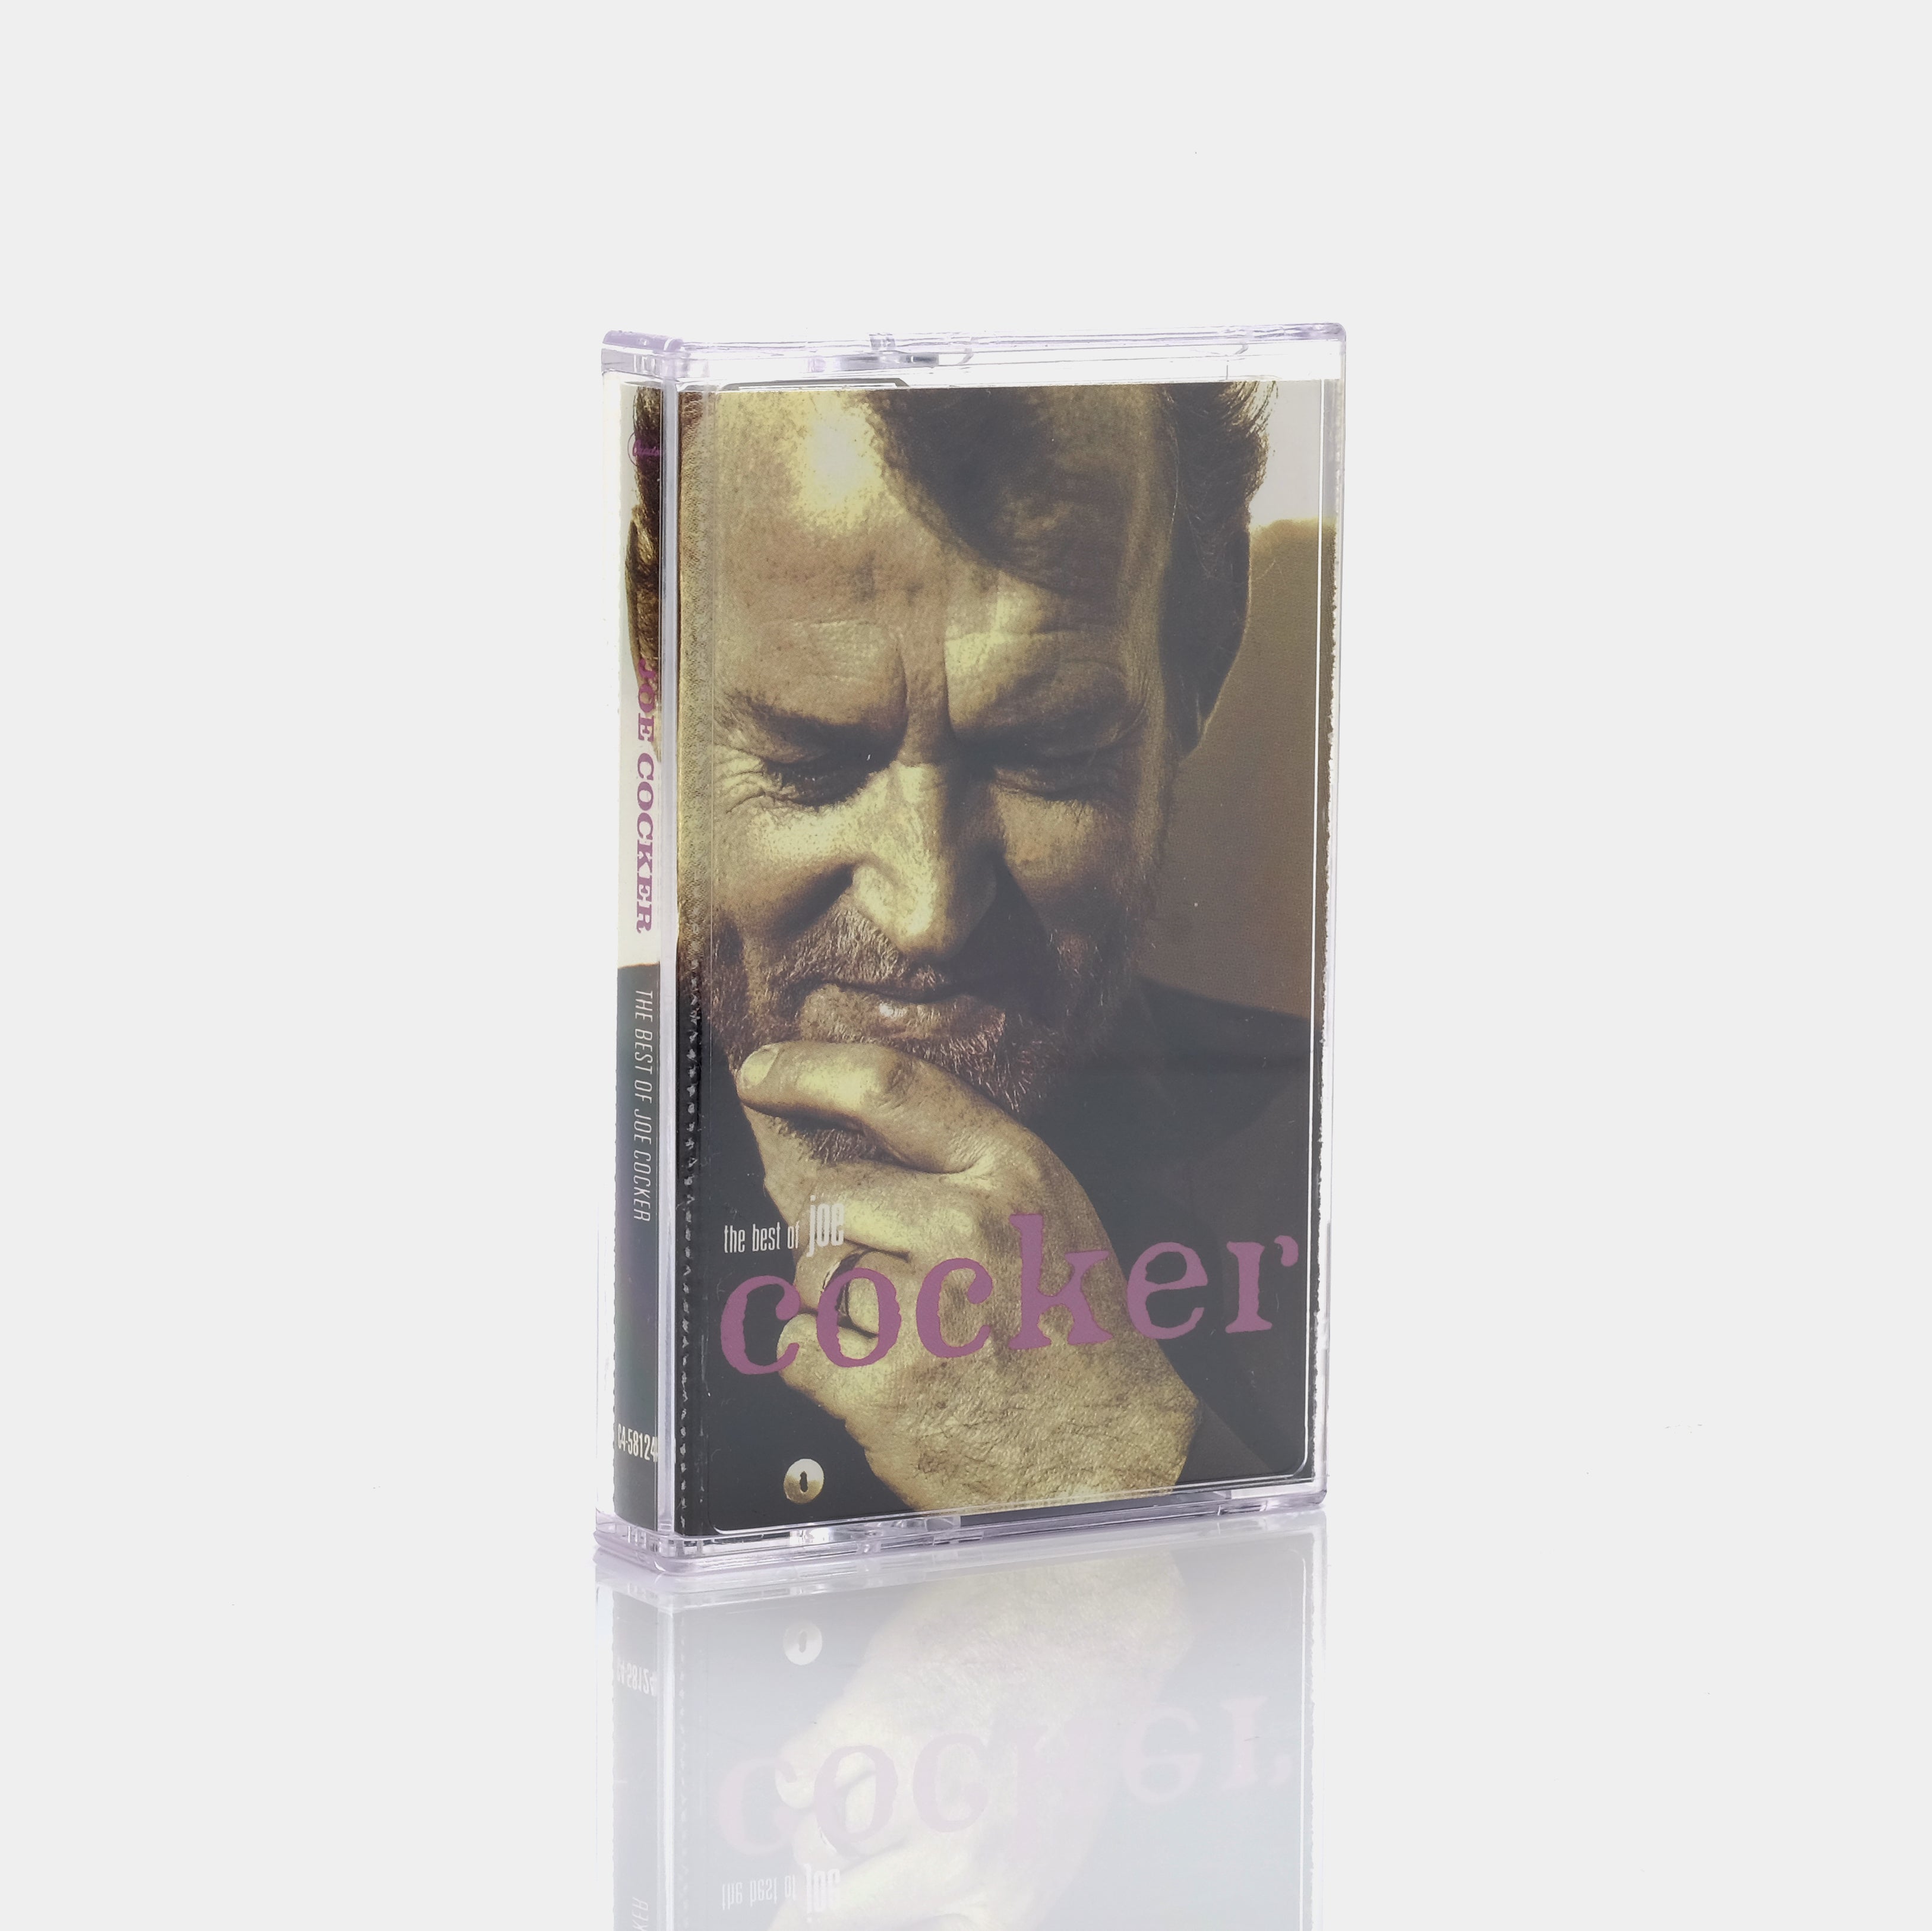 Joe Cocker - Best of Joe Cocker Cassette Tape